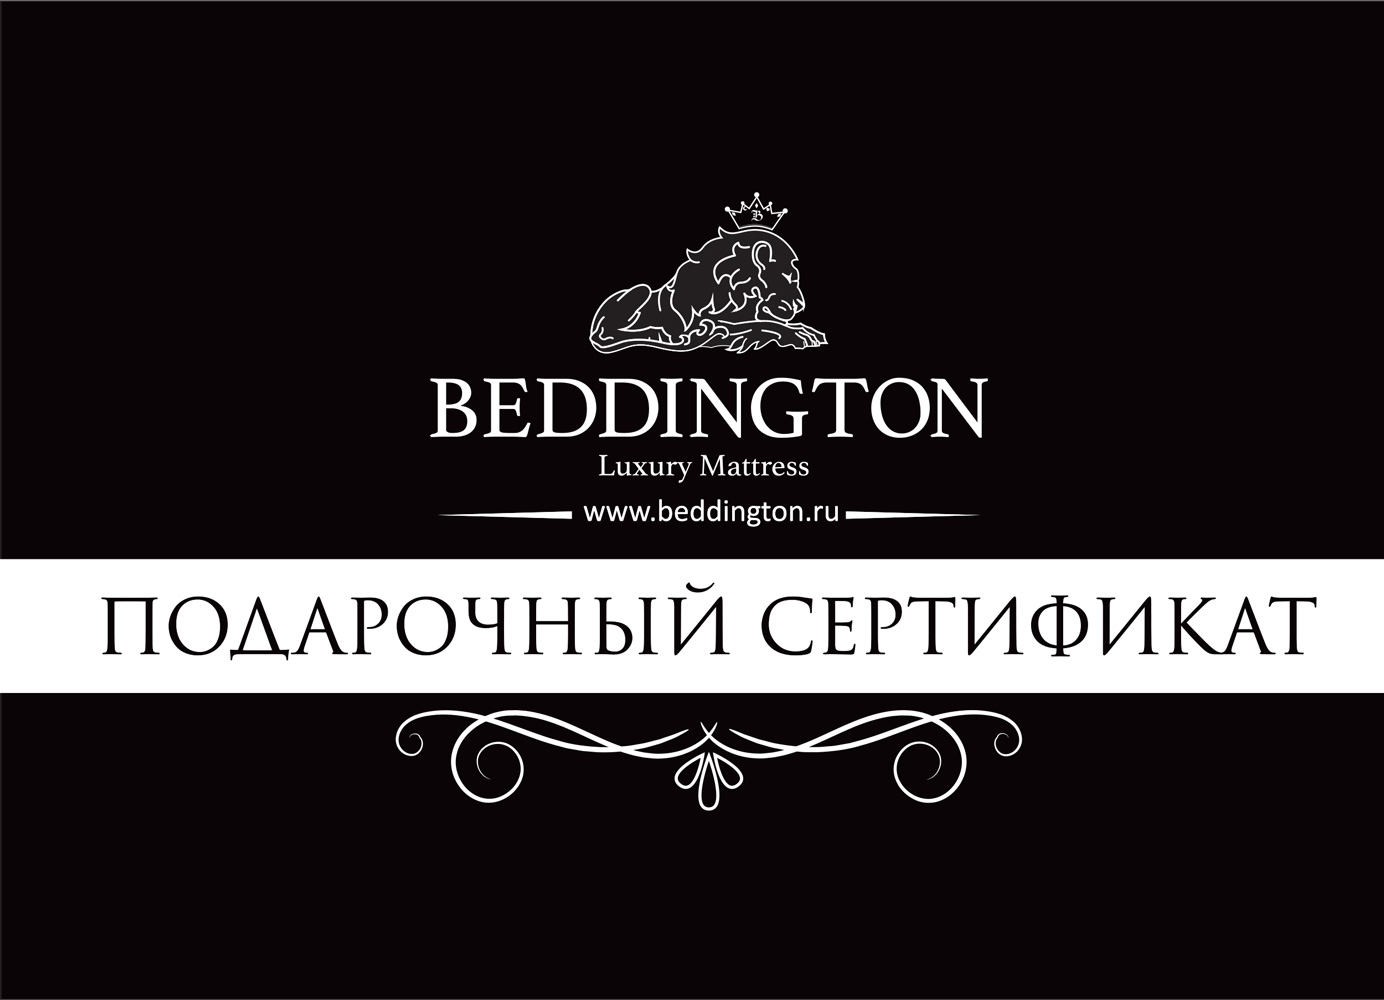 Подарочный сертификат от магазина Beddington.ru